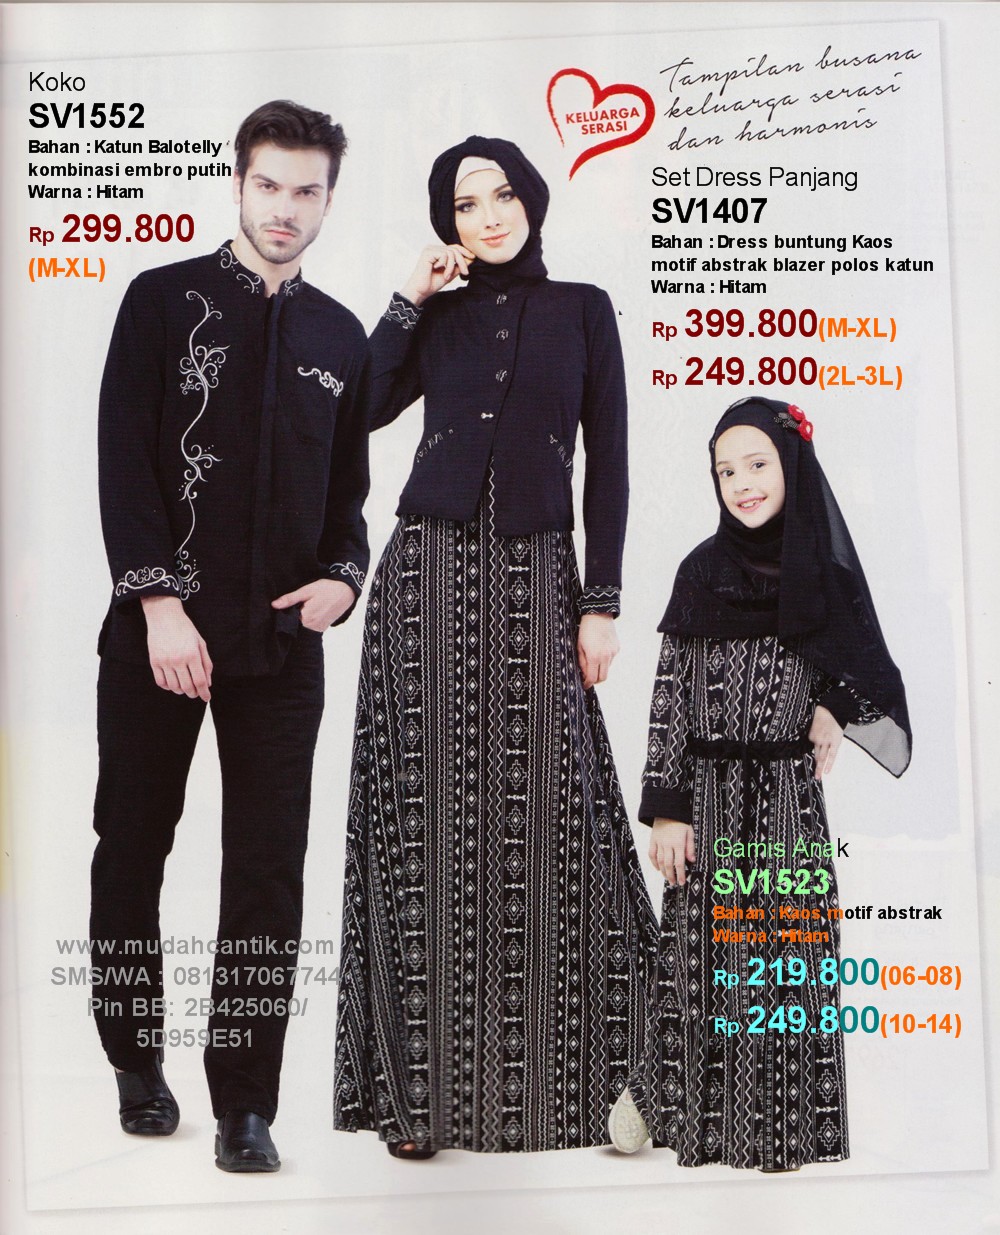 Sarimbit Keluarga Muslim - Savero Fashion by Rika. SMS 